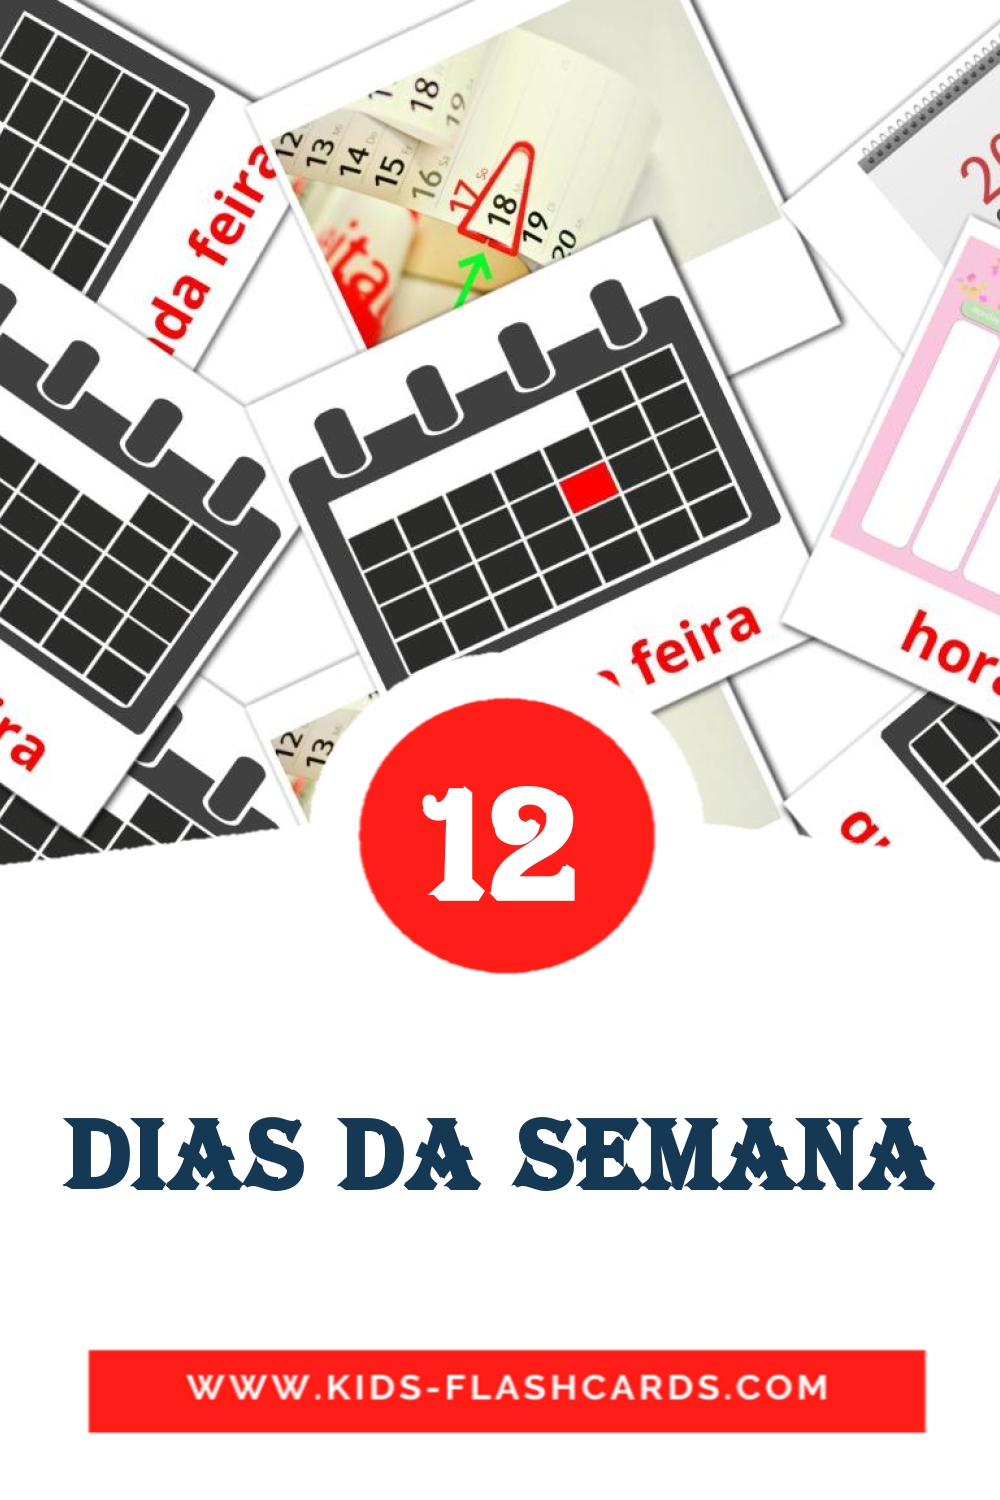 12 tarjetas didacticas de Dias da Semana para el jardín de infancia en portugués